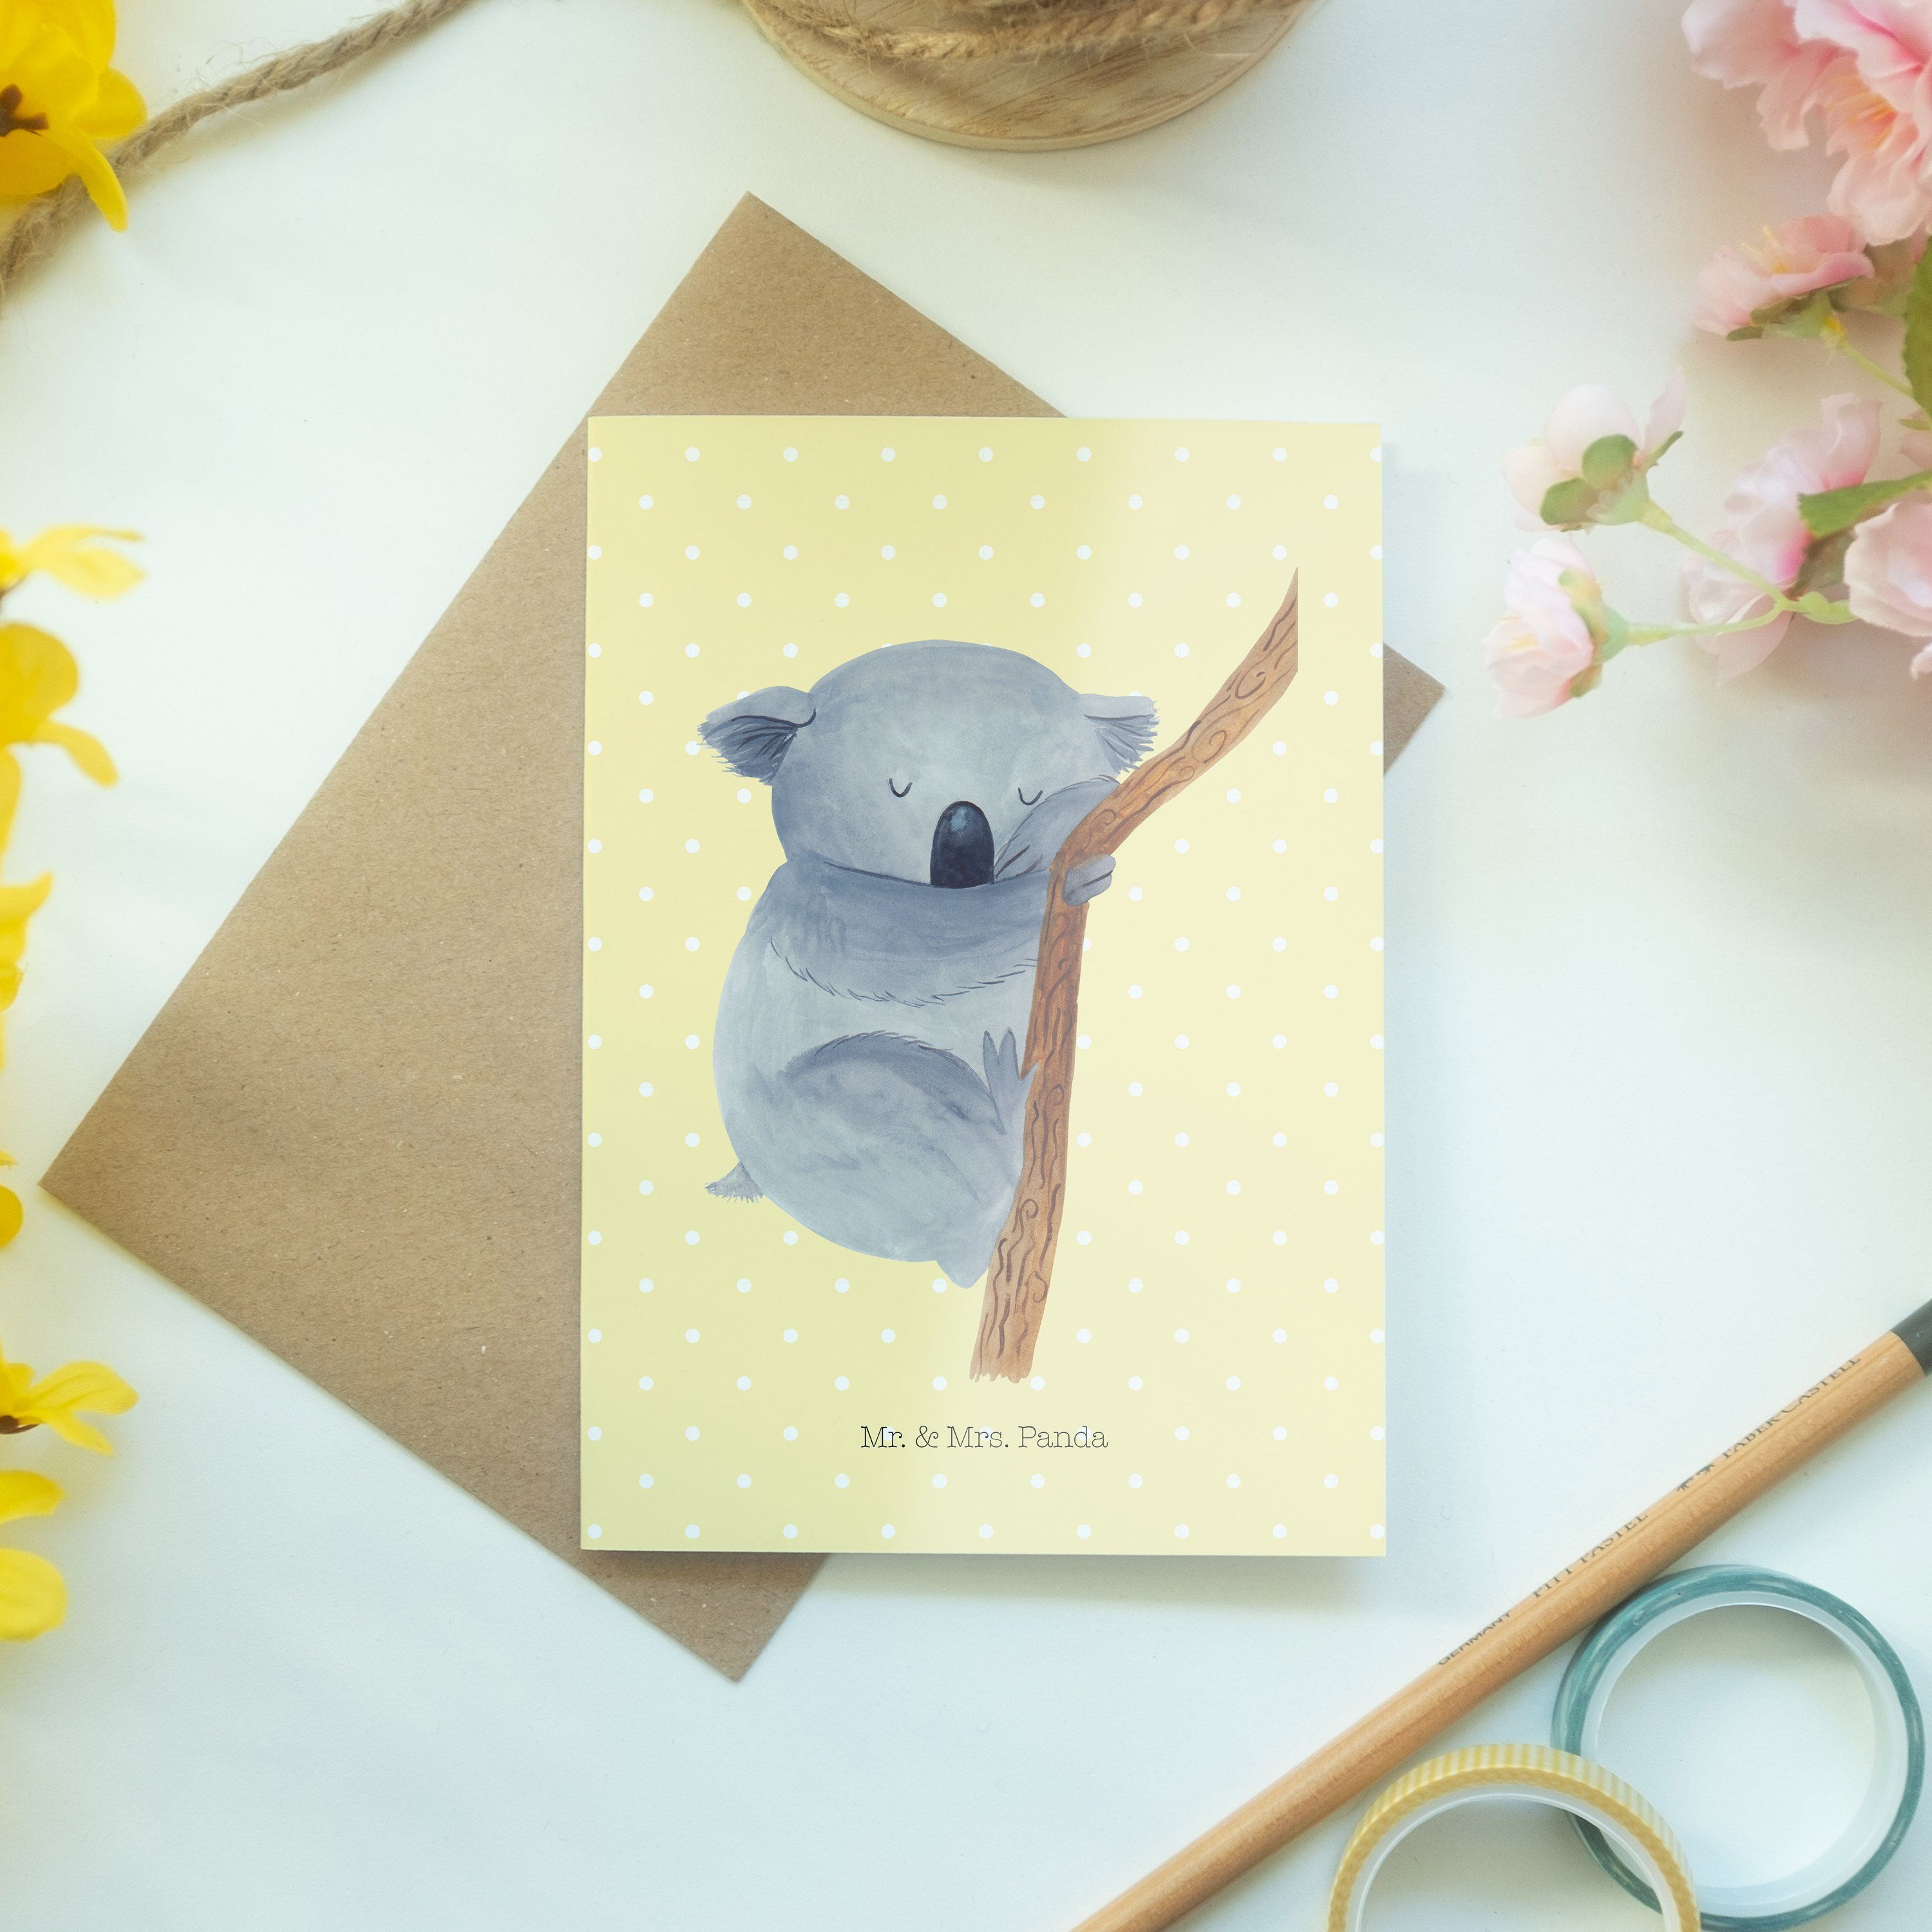 Mr. & Mrs. Panda - schlafen, Gelb Geburtstagskarte Pastell Geschenk, - Koalabär Grußkarte Tiere